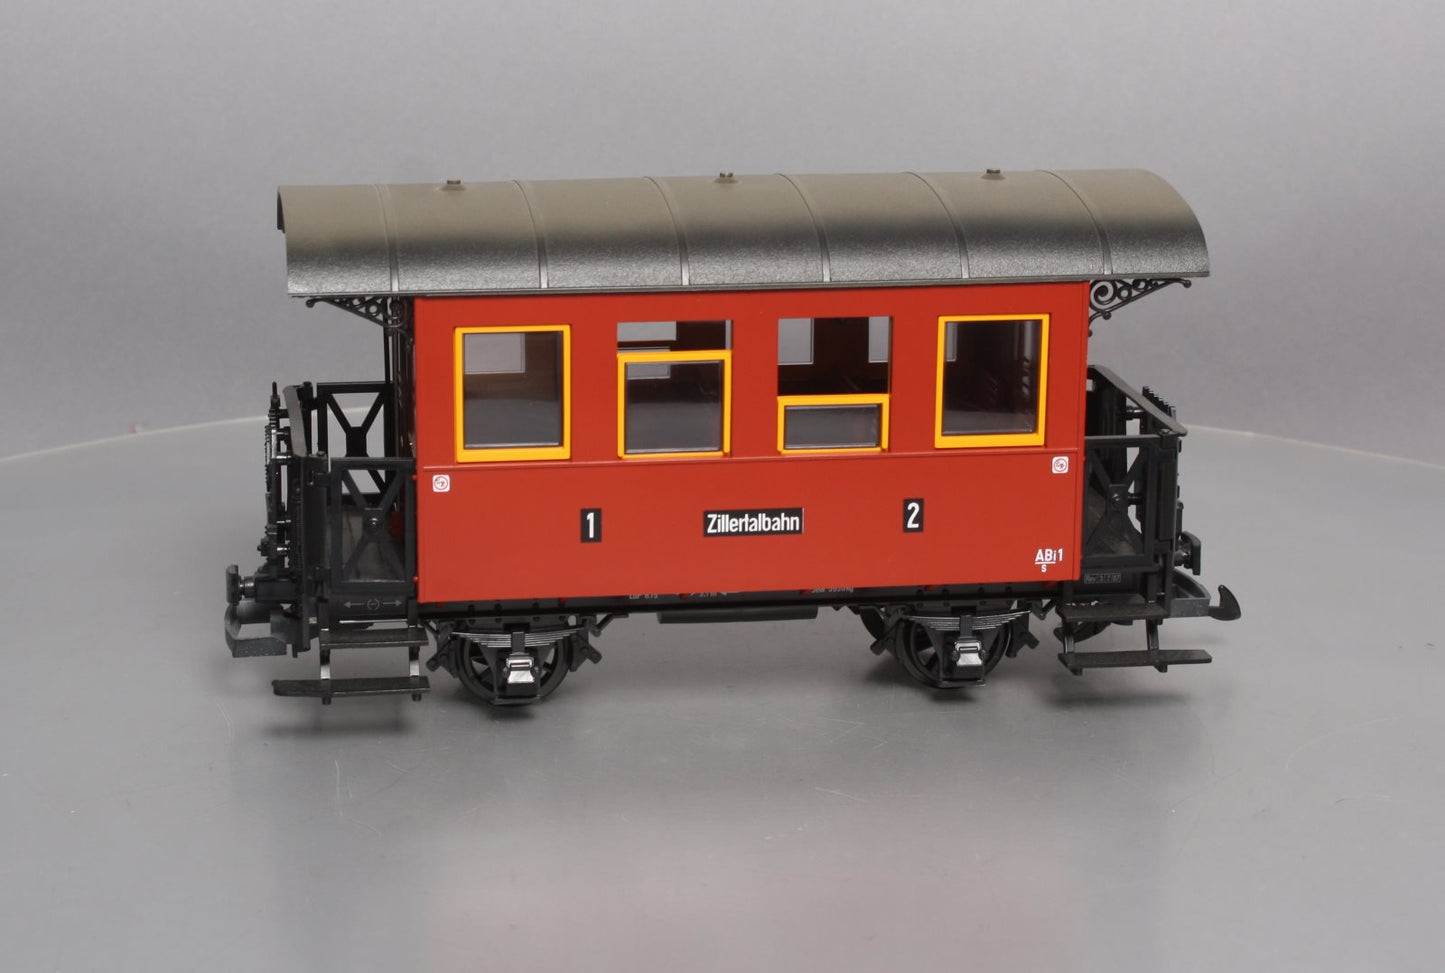 LGB 3007 G Scale Zillertalbahn 2nd Class Passenger Car EX/Box